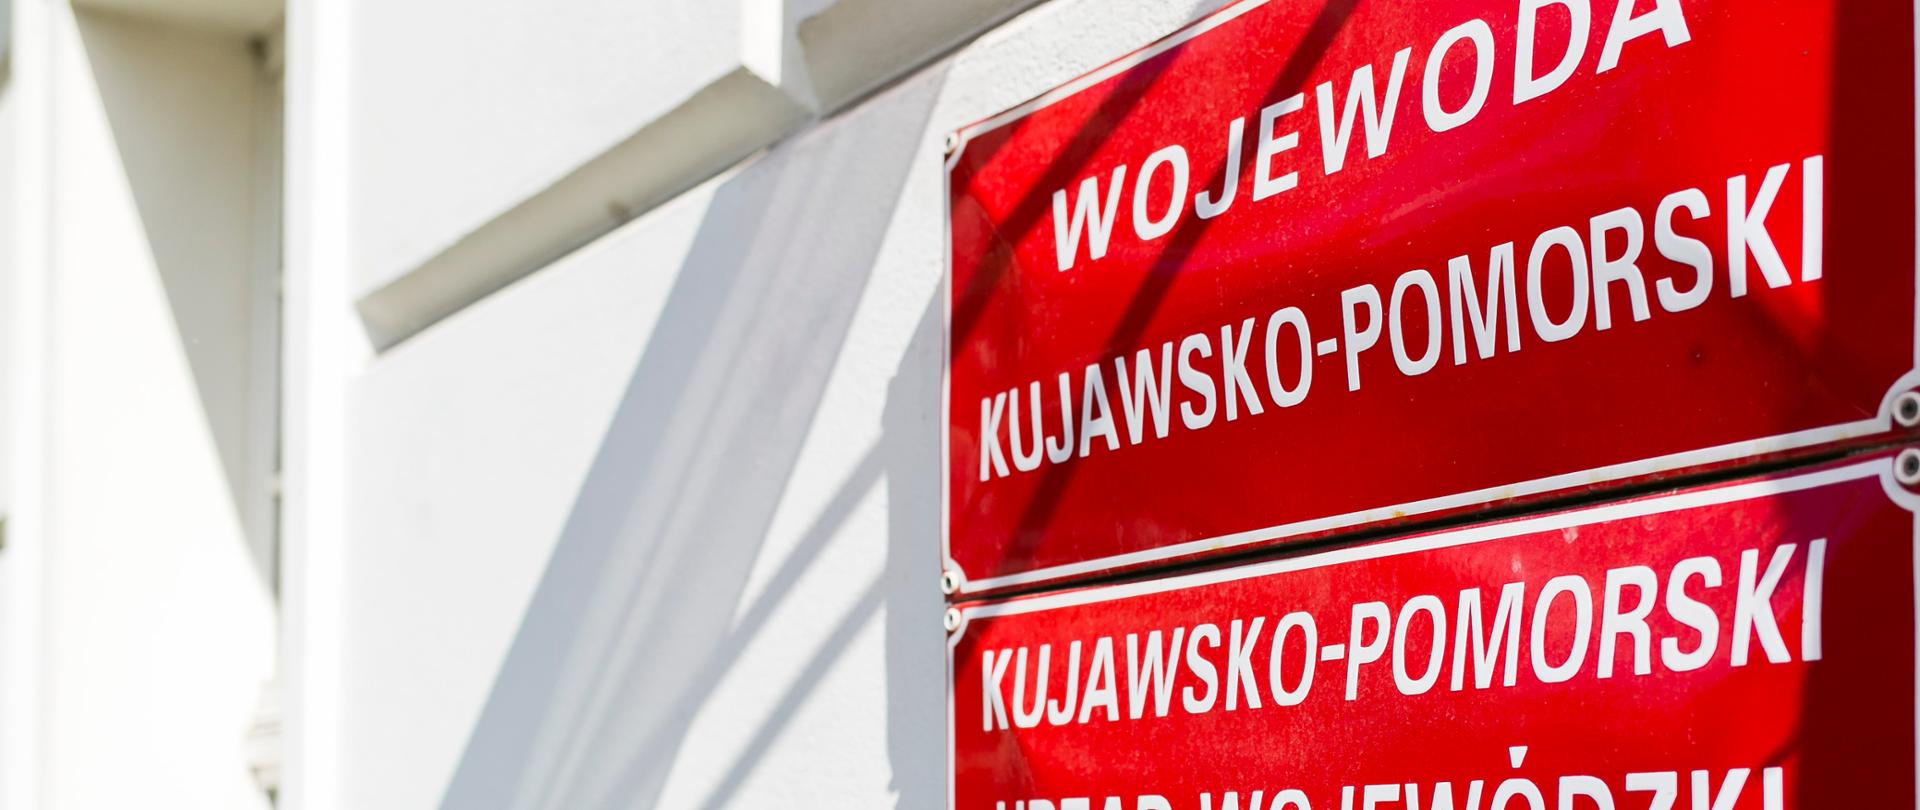 Tablice na ścianie budynku z napisami "Wojewoda Kujawsko-Pomorski" oraz "Kujawsko-Pomorski Urząd Wojewódzki w Bydgoszczy"